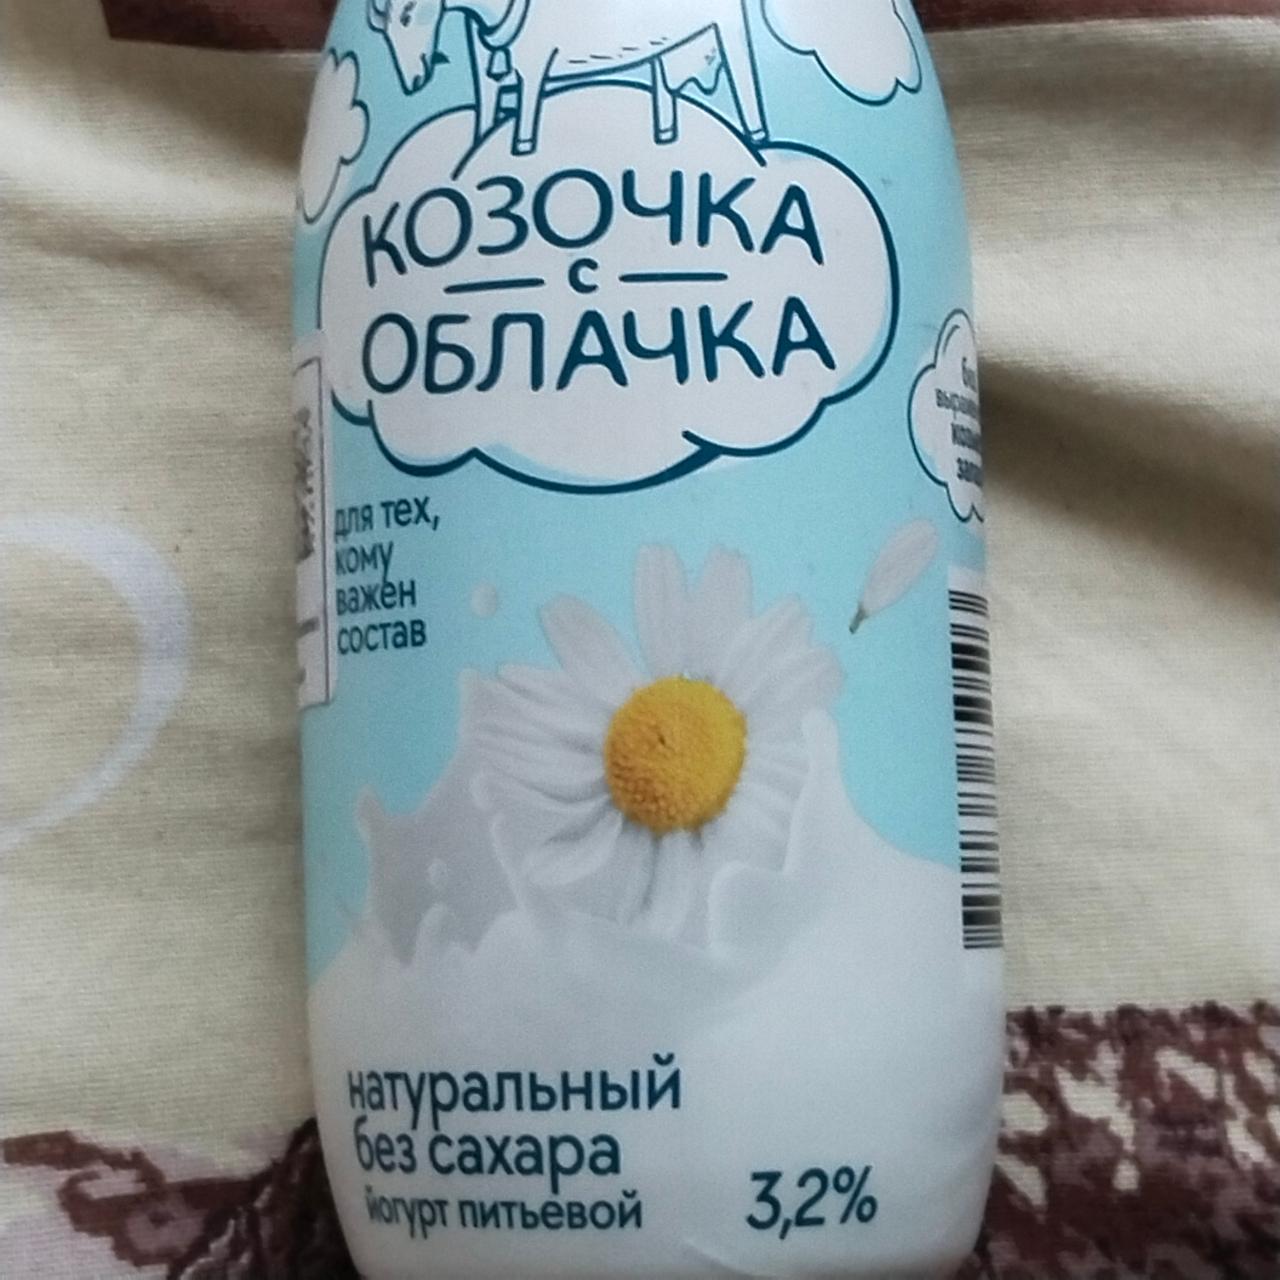 Фото - Йогурт натуральный из козьего молока, Козочка с облачка